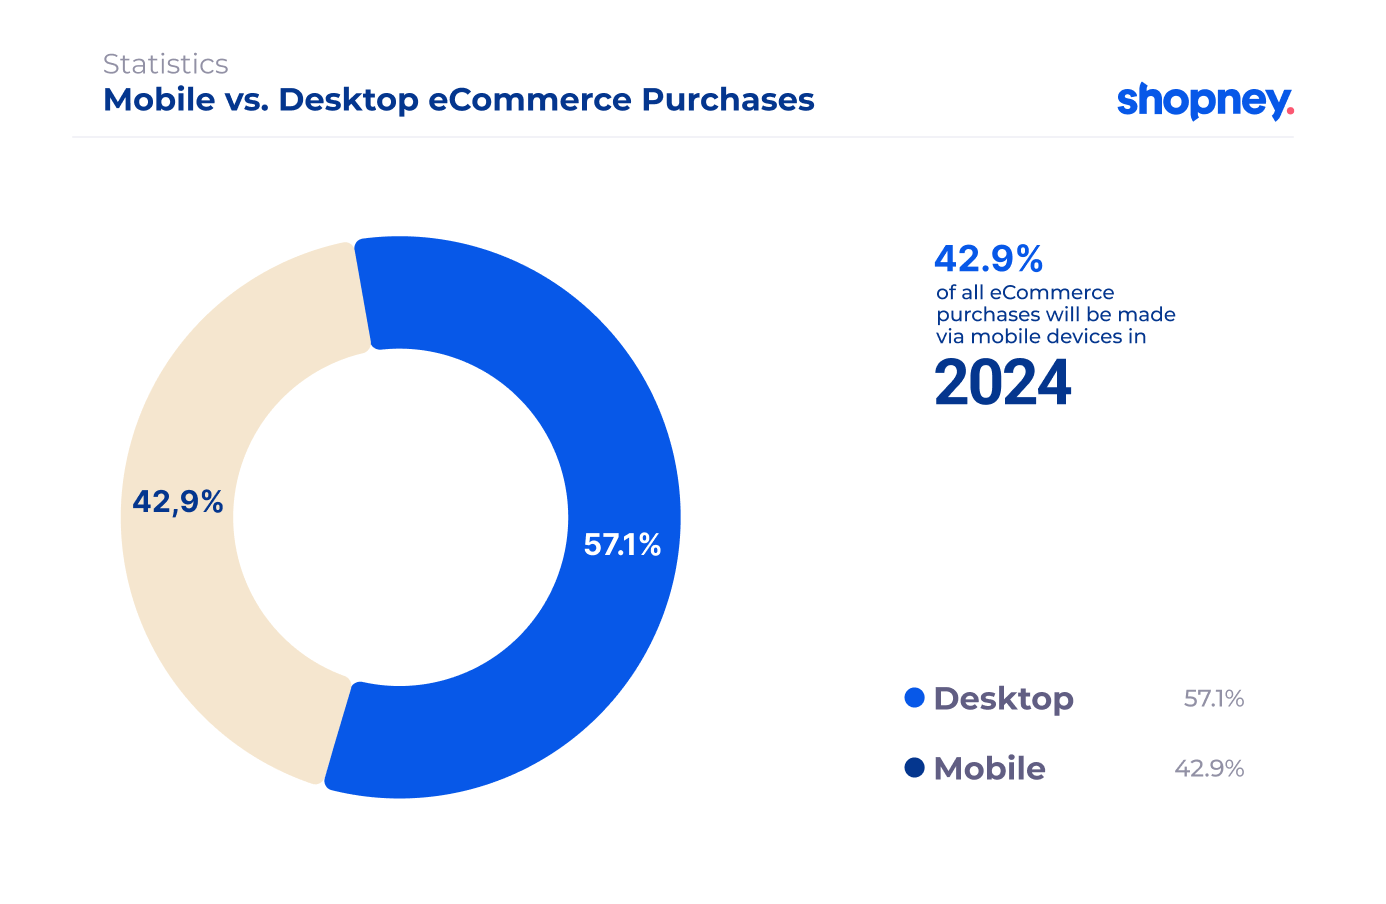 Mobile vs. Desktop eCommerce purchases